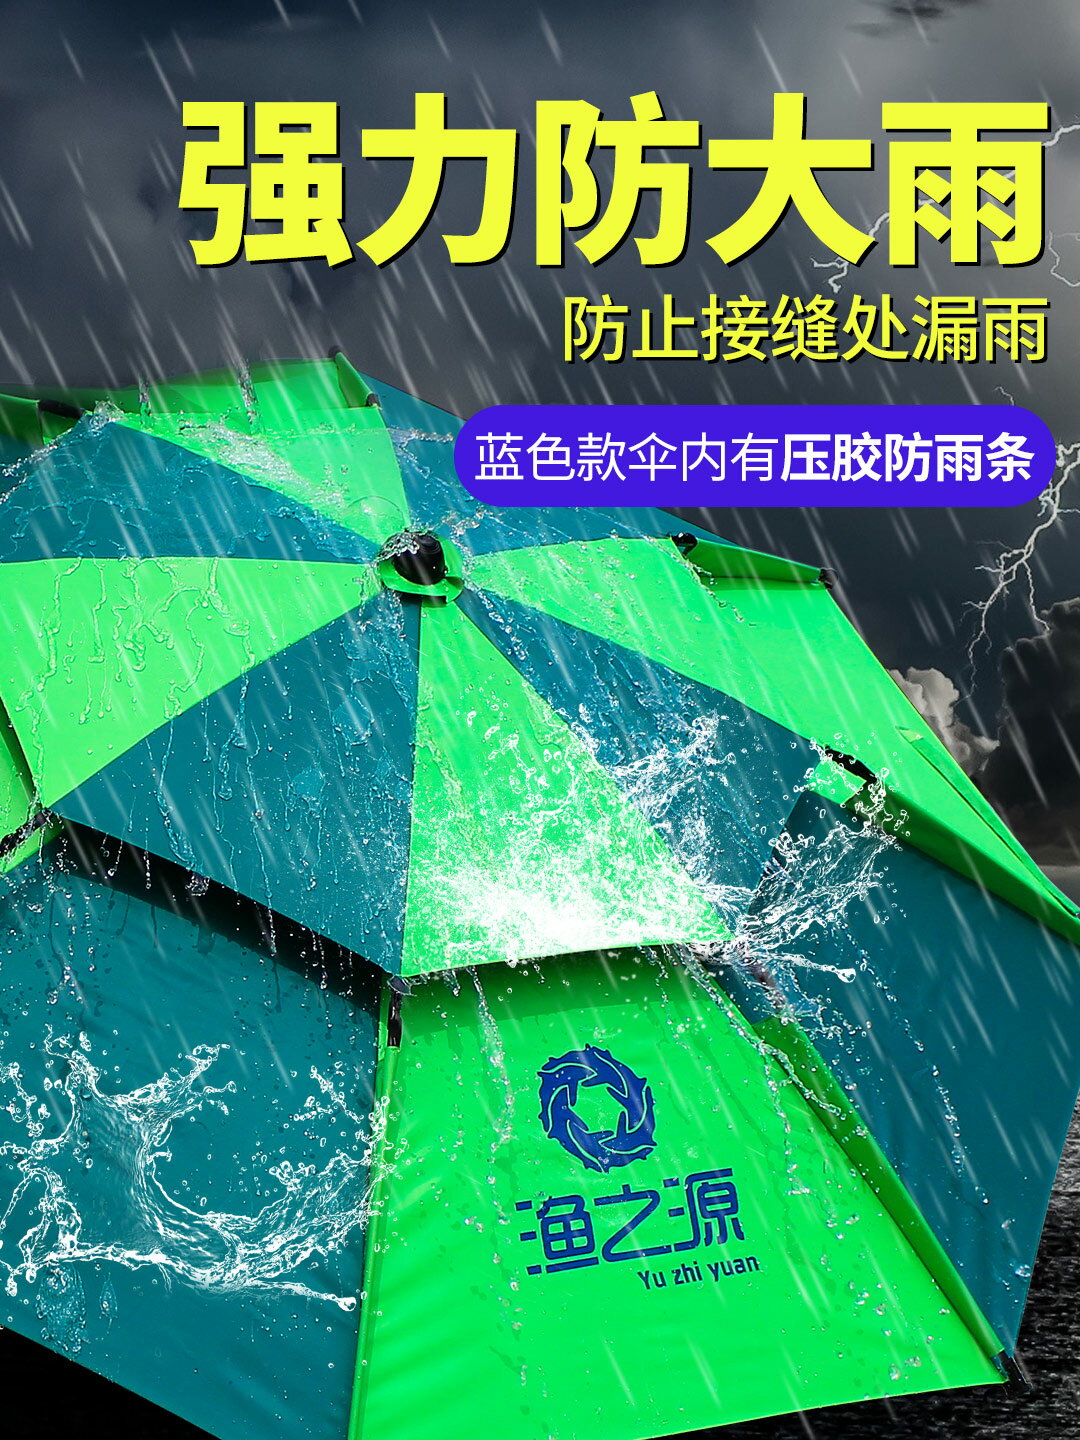 釣魚遮陽傘 漁之源釣魚傘2.6米萬向防雨暴雨釣傘2.4大加厚防曬雨傘魚傘遮陽傘【MJ10694】